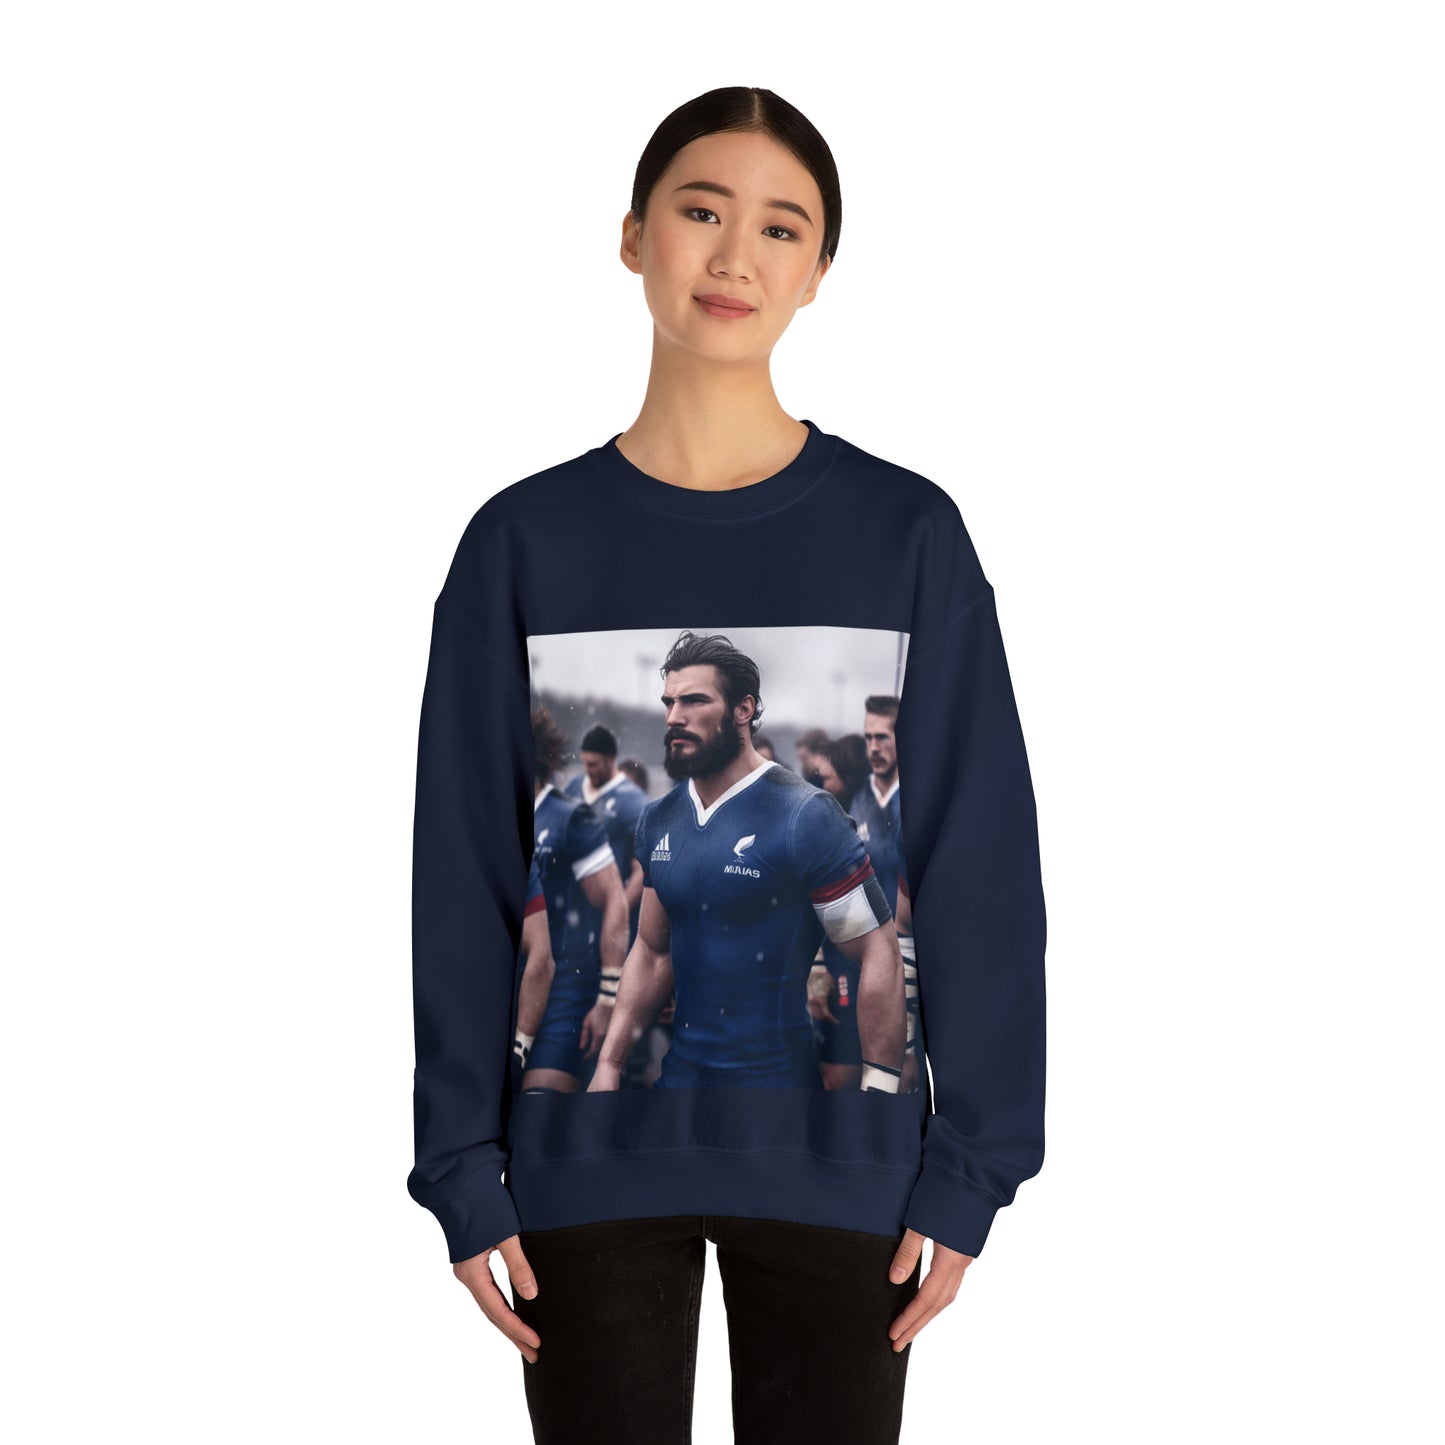 Ready France - dark sweatshirts